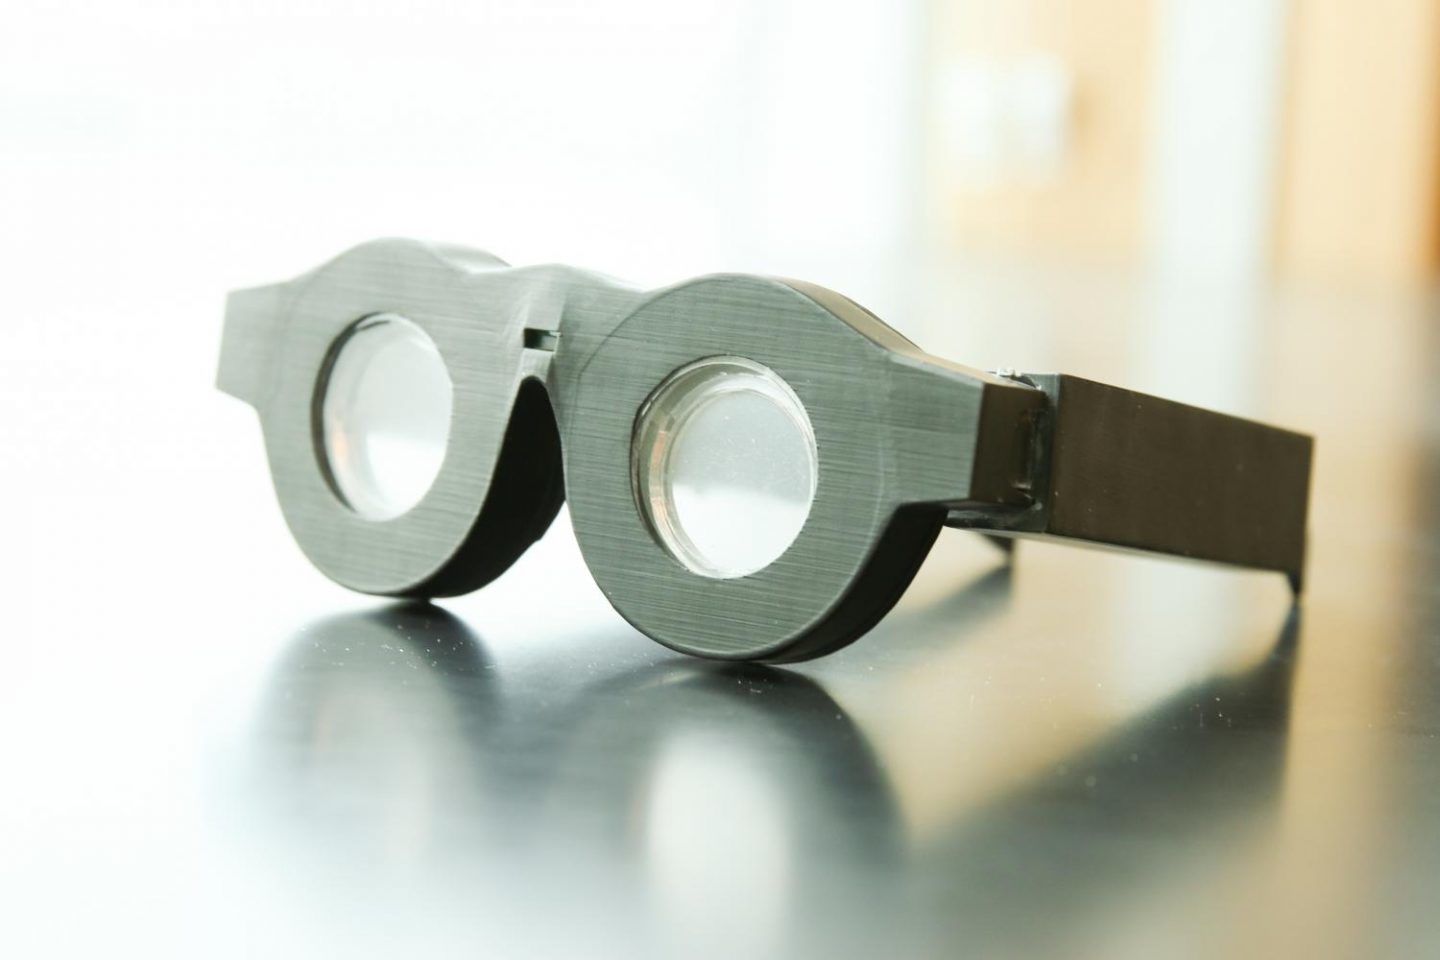 نظارات ذكية ستنهي عصر النظارات ثنائية البؤر